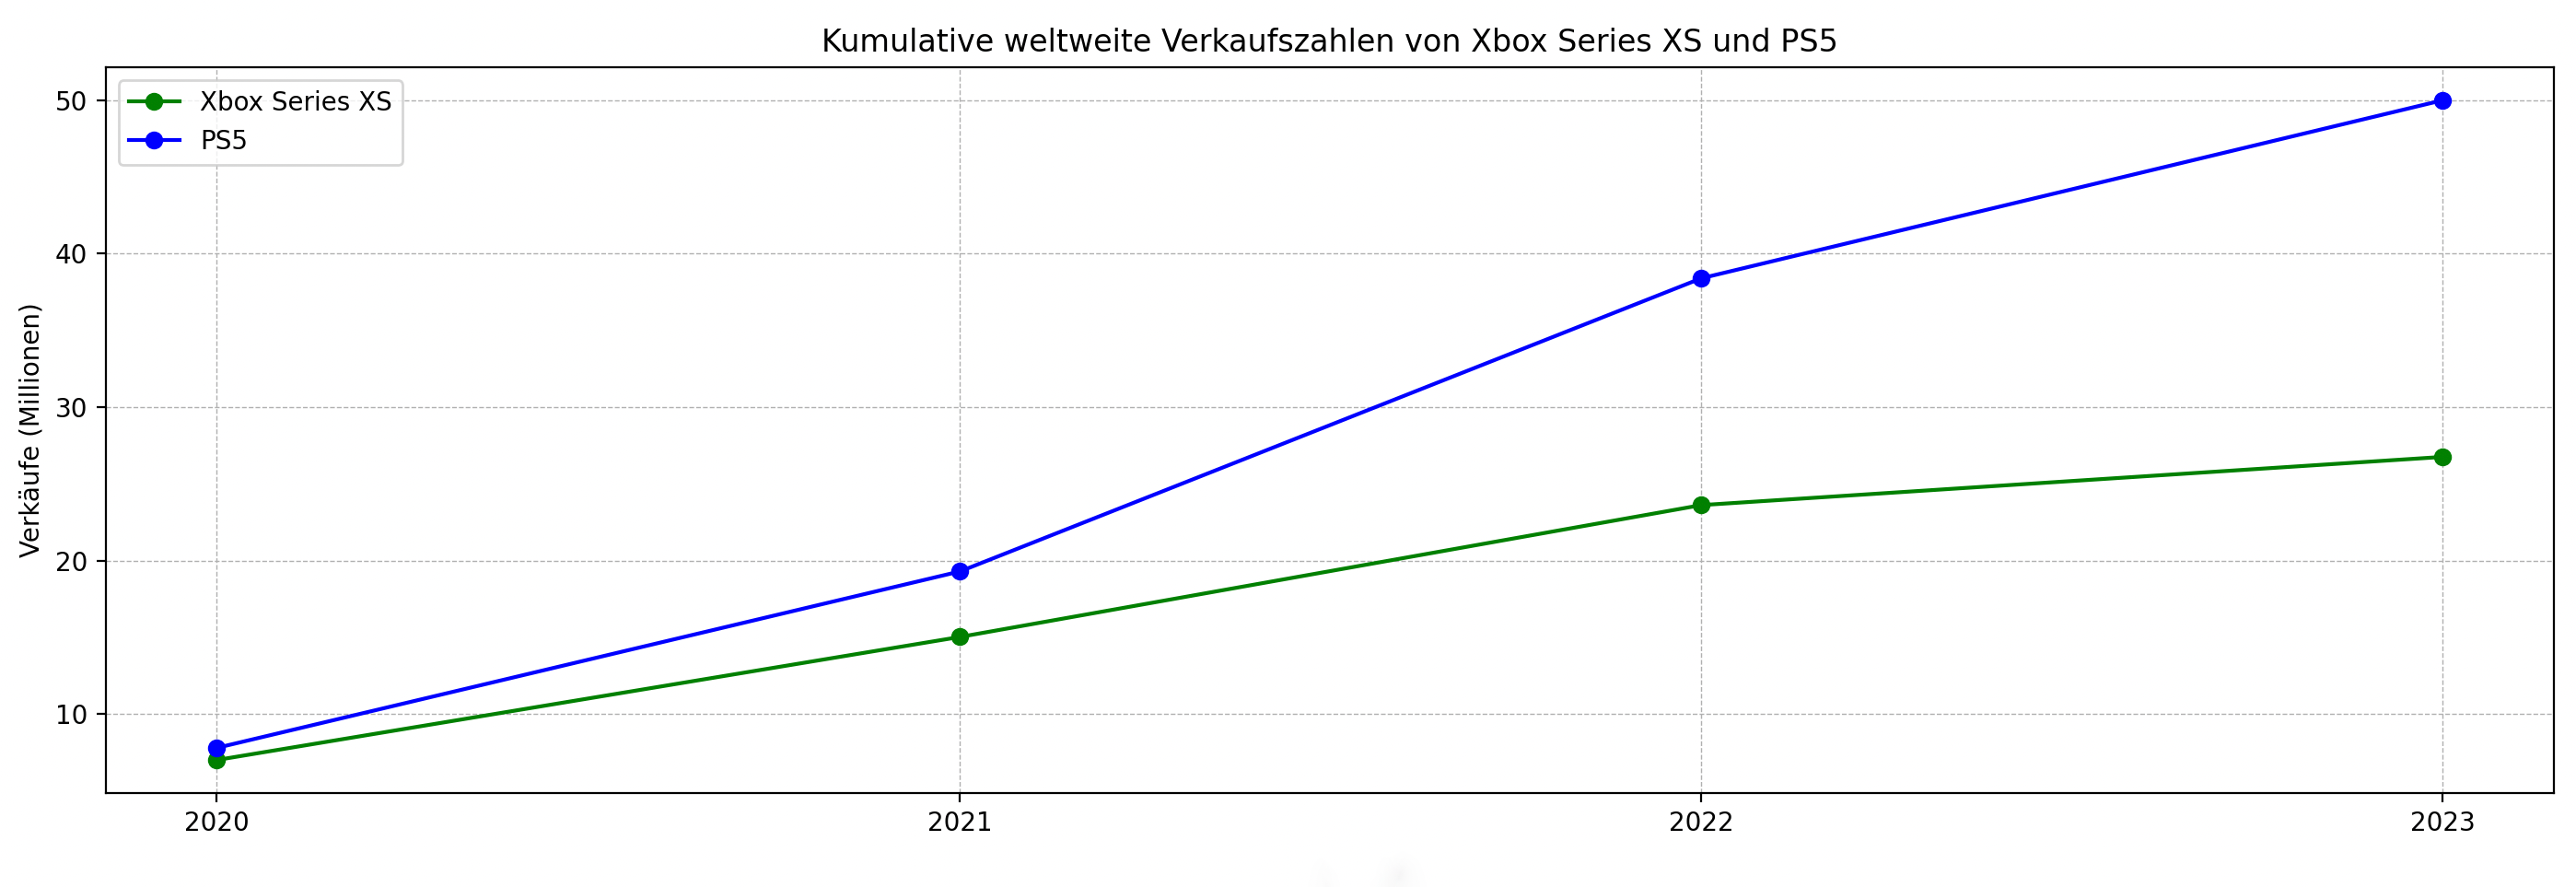 Die Verkaufszahlen der PlayStation 5 und Xbox Series XS bis 2023